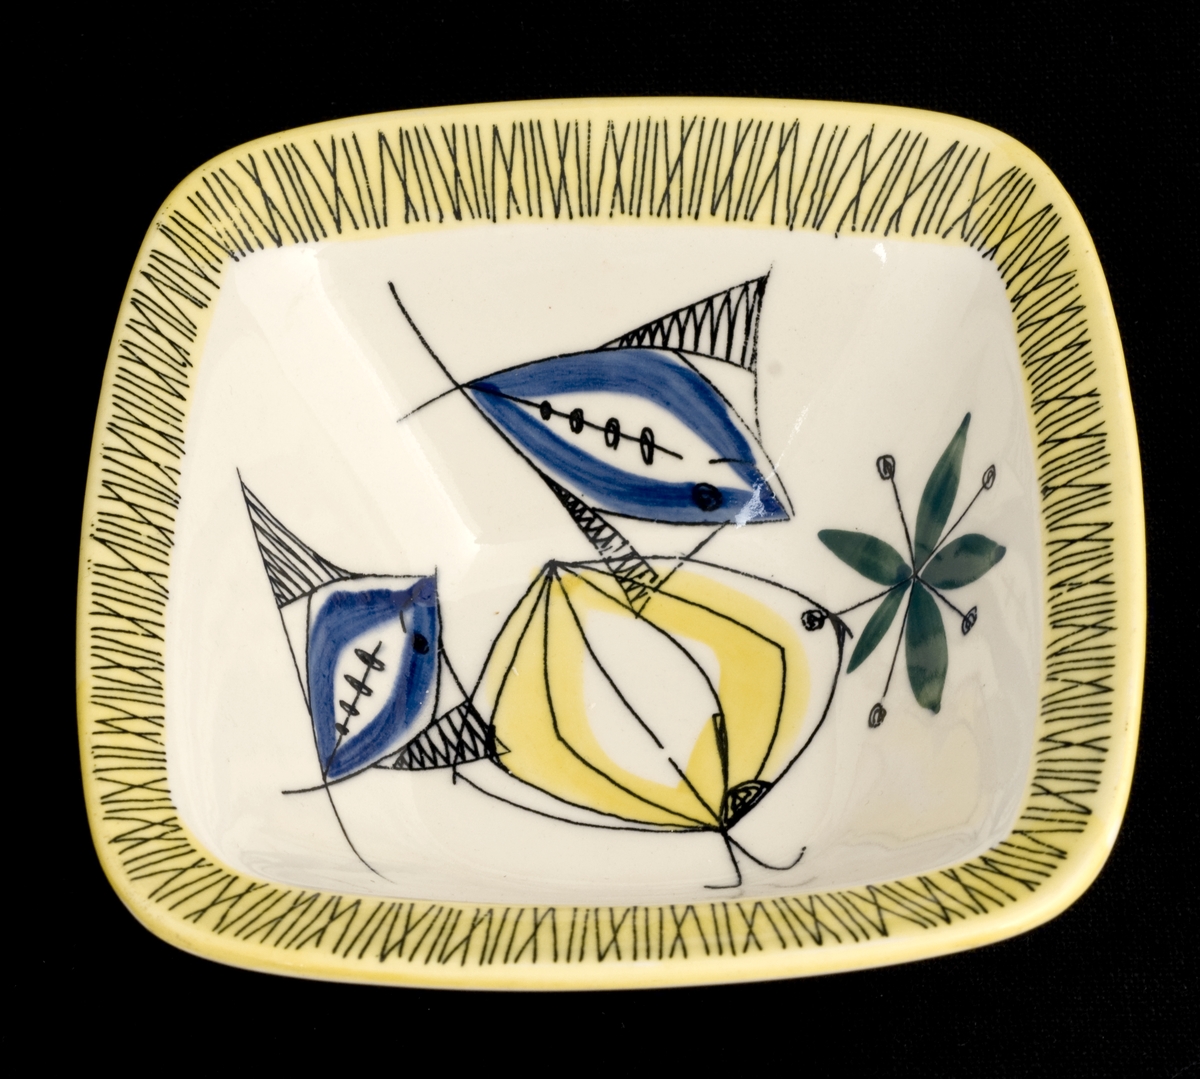 Dekorert med motiv av gul sitron, grønne blader og blå fisker. Kranset med bambusmotiv av svarte streker på gul bakgrunn.